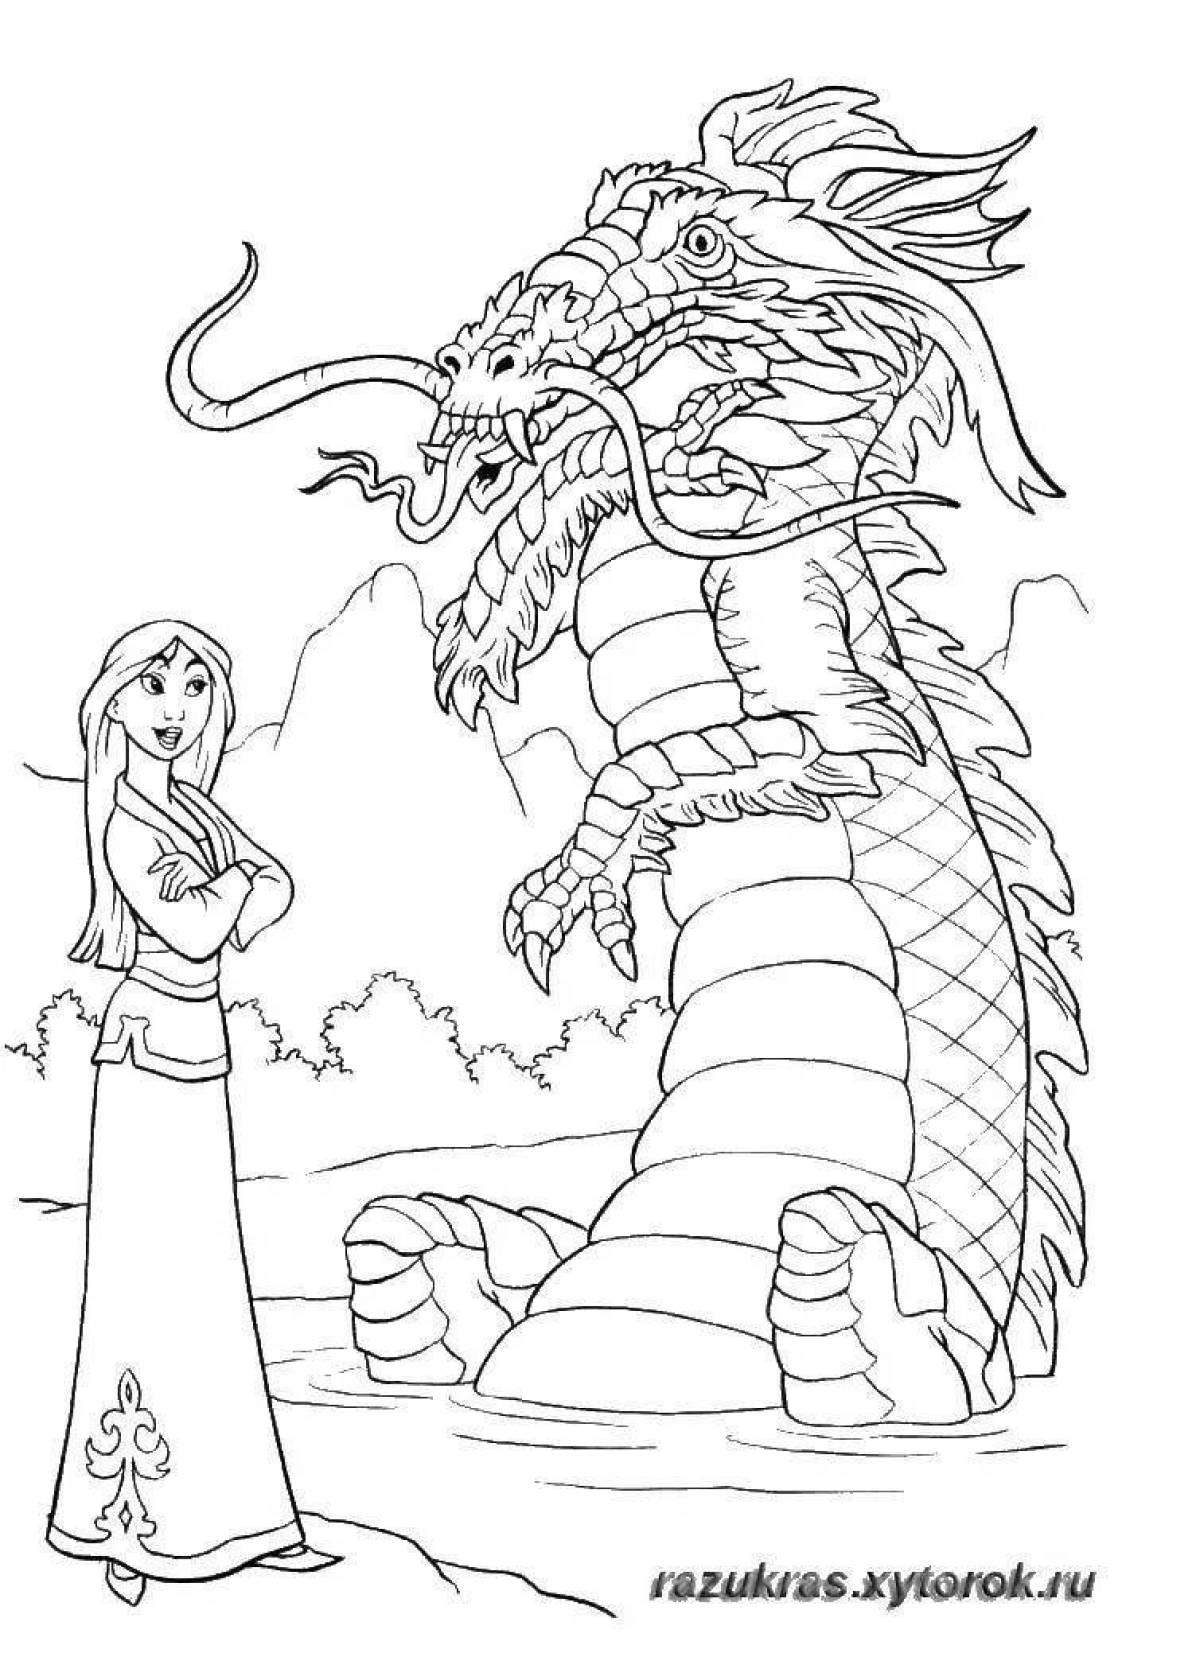 Princess and dragon #9